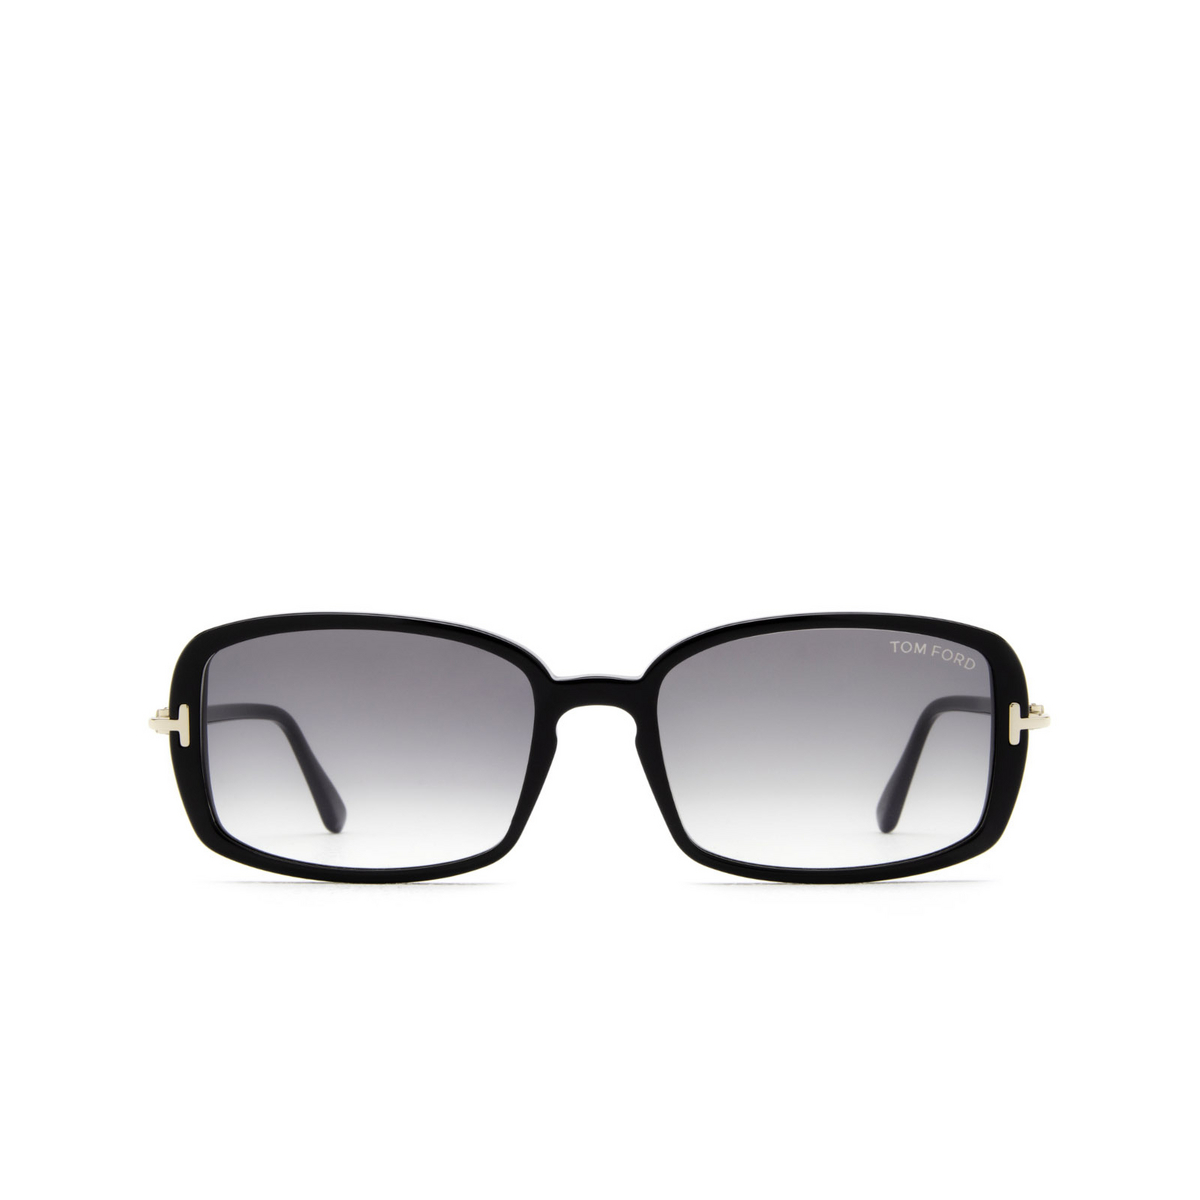 Tom Ford BONHAM Sunglasses 01B Black - front view